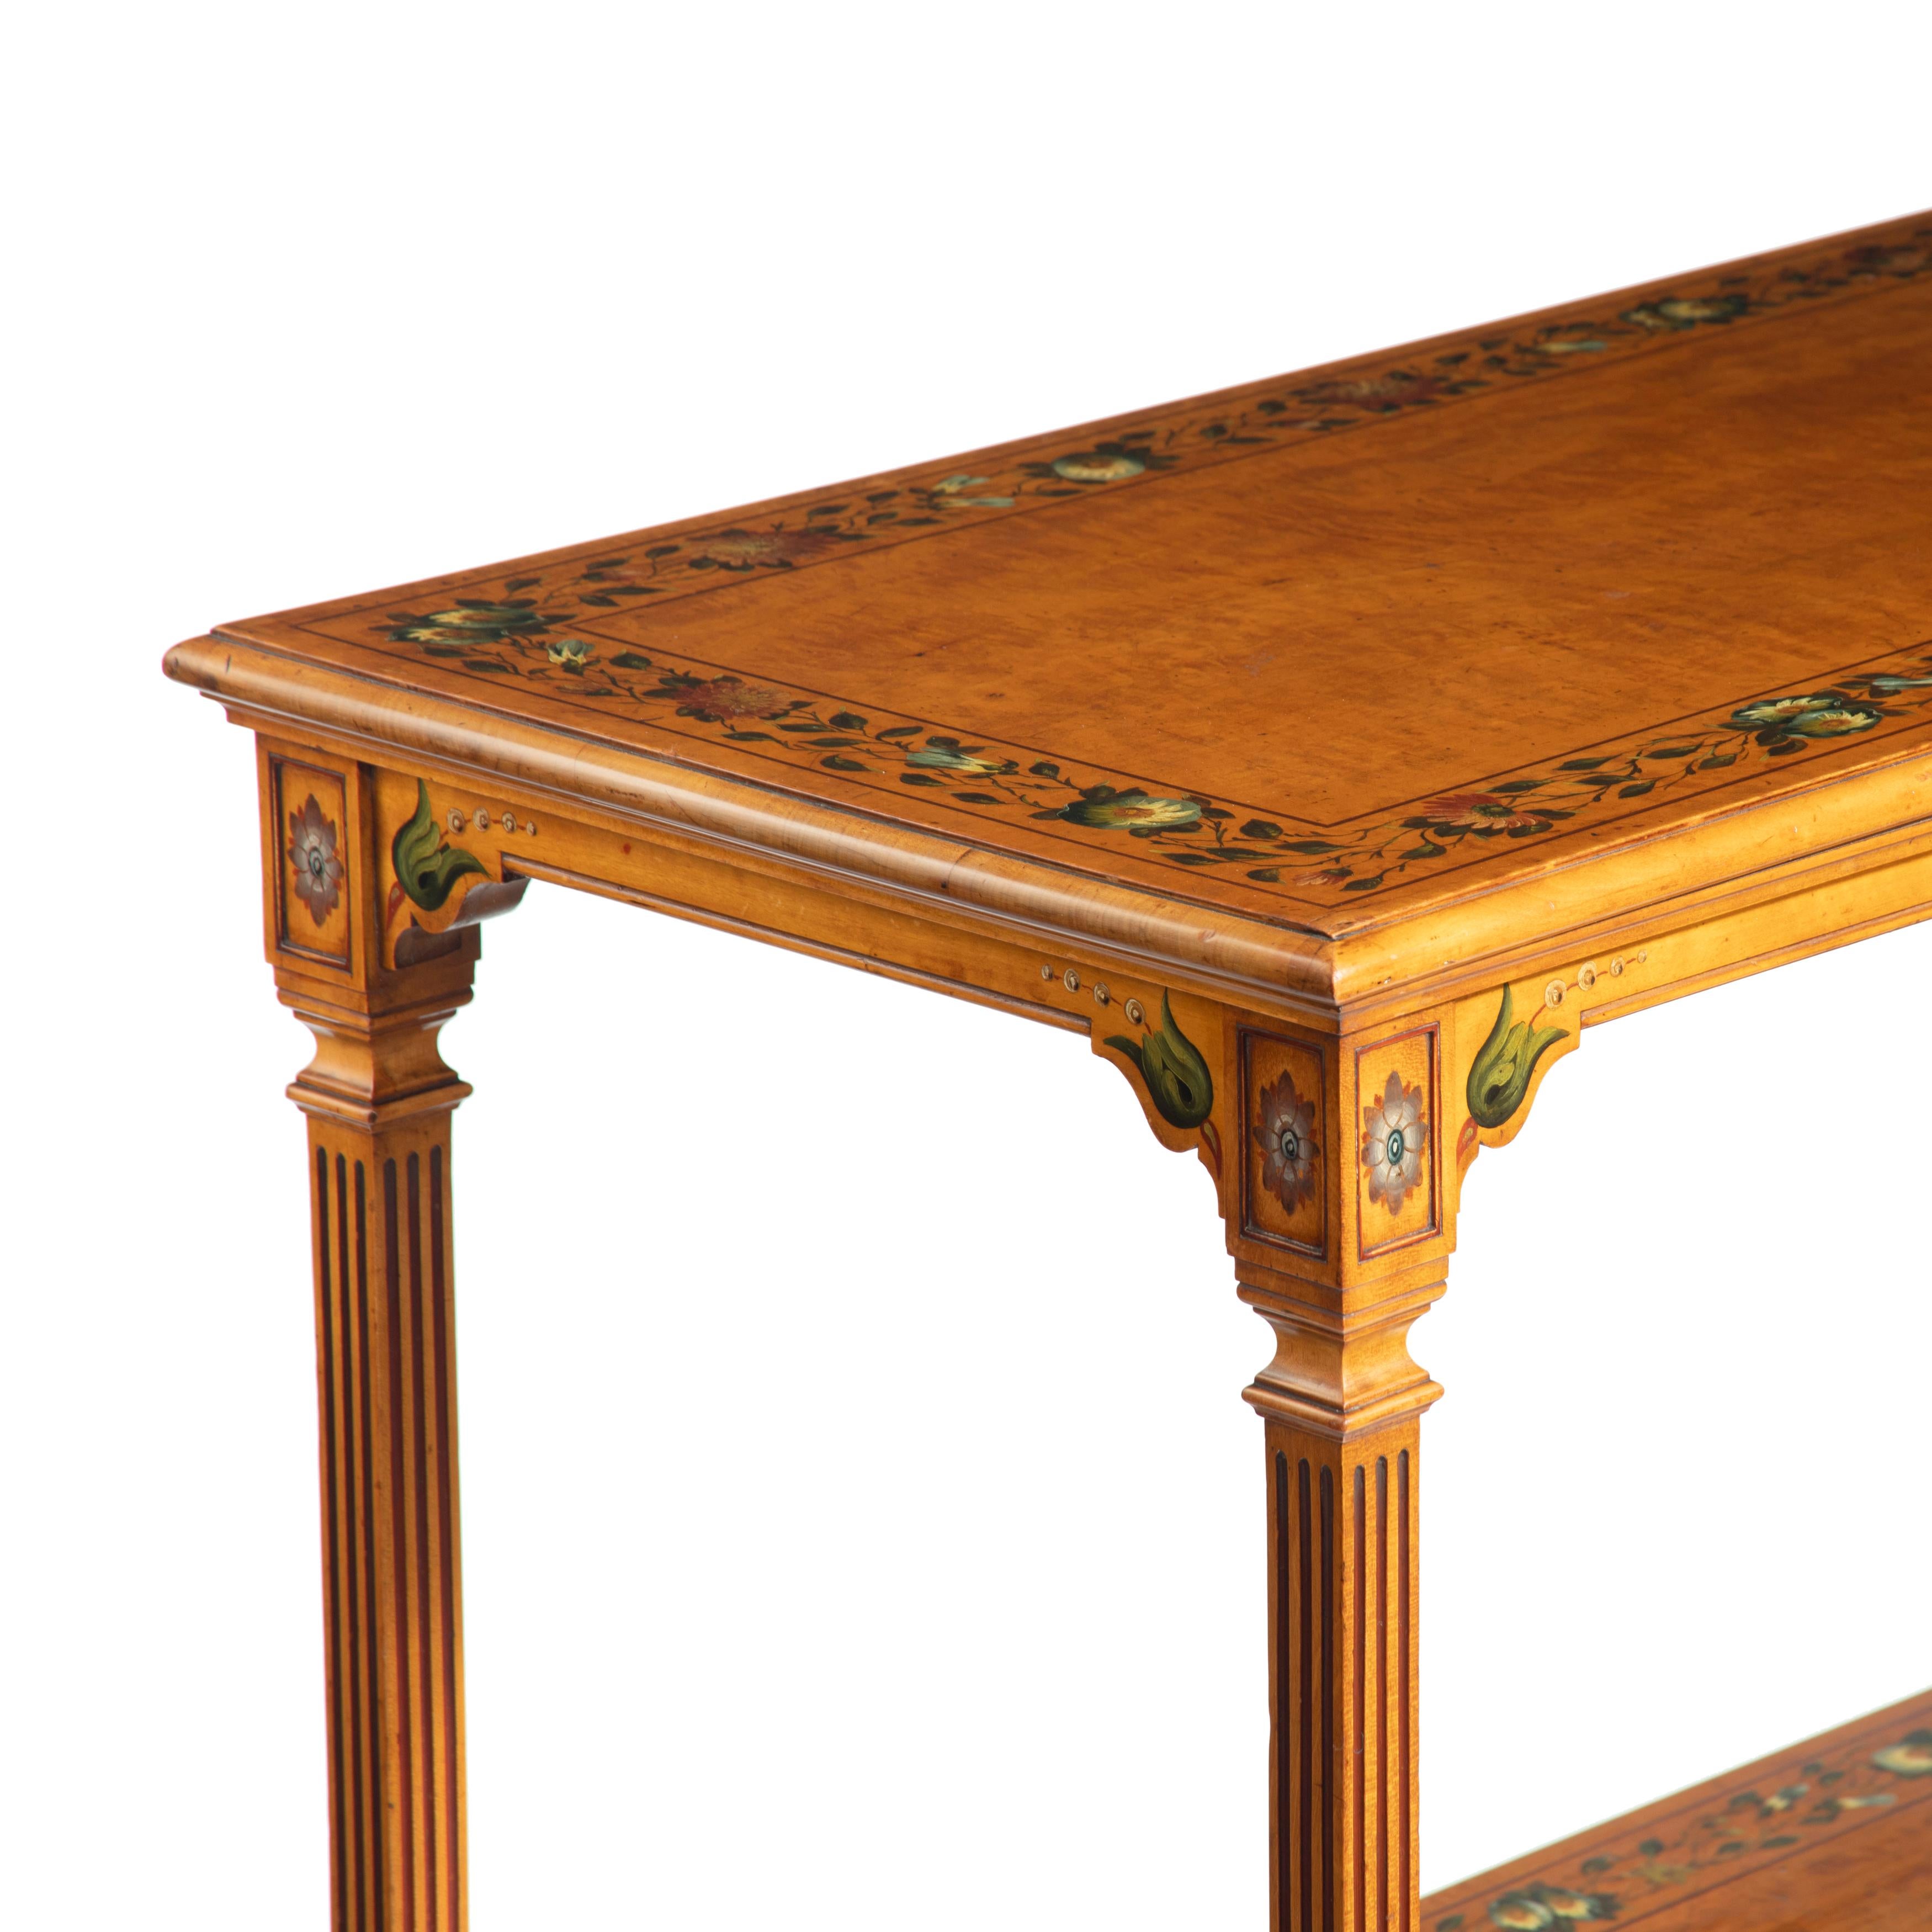 Table à deux niveaux en bois satiné peint, de forme rectangulaire avec des pieds tournés et peints, décorée de guirlandes de fleurs, roulettes d'origine.  Origine britannique, circa 1860.